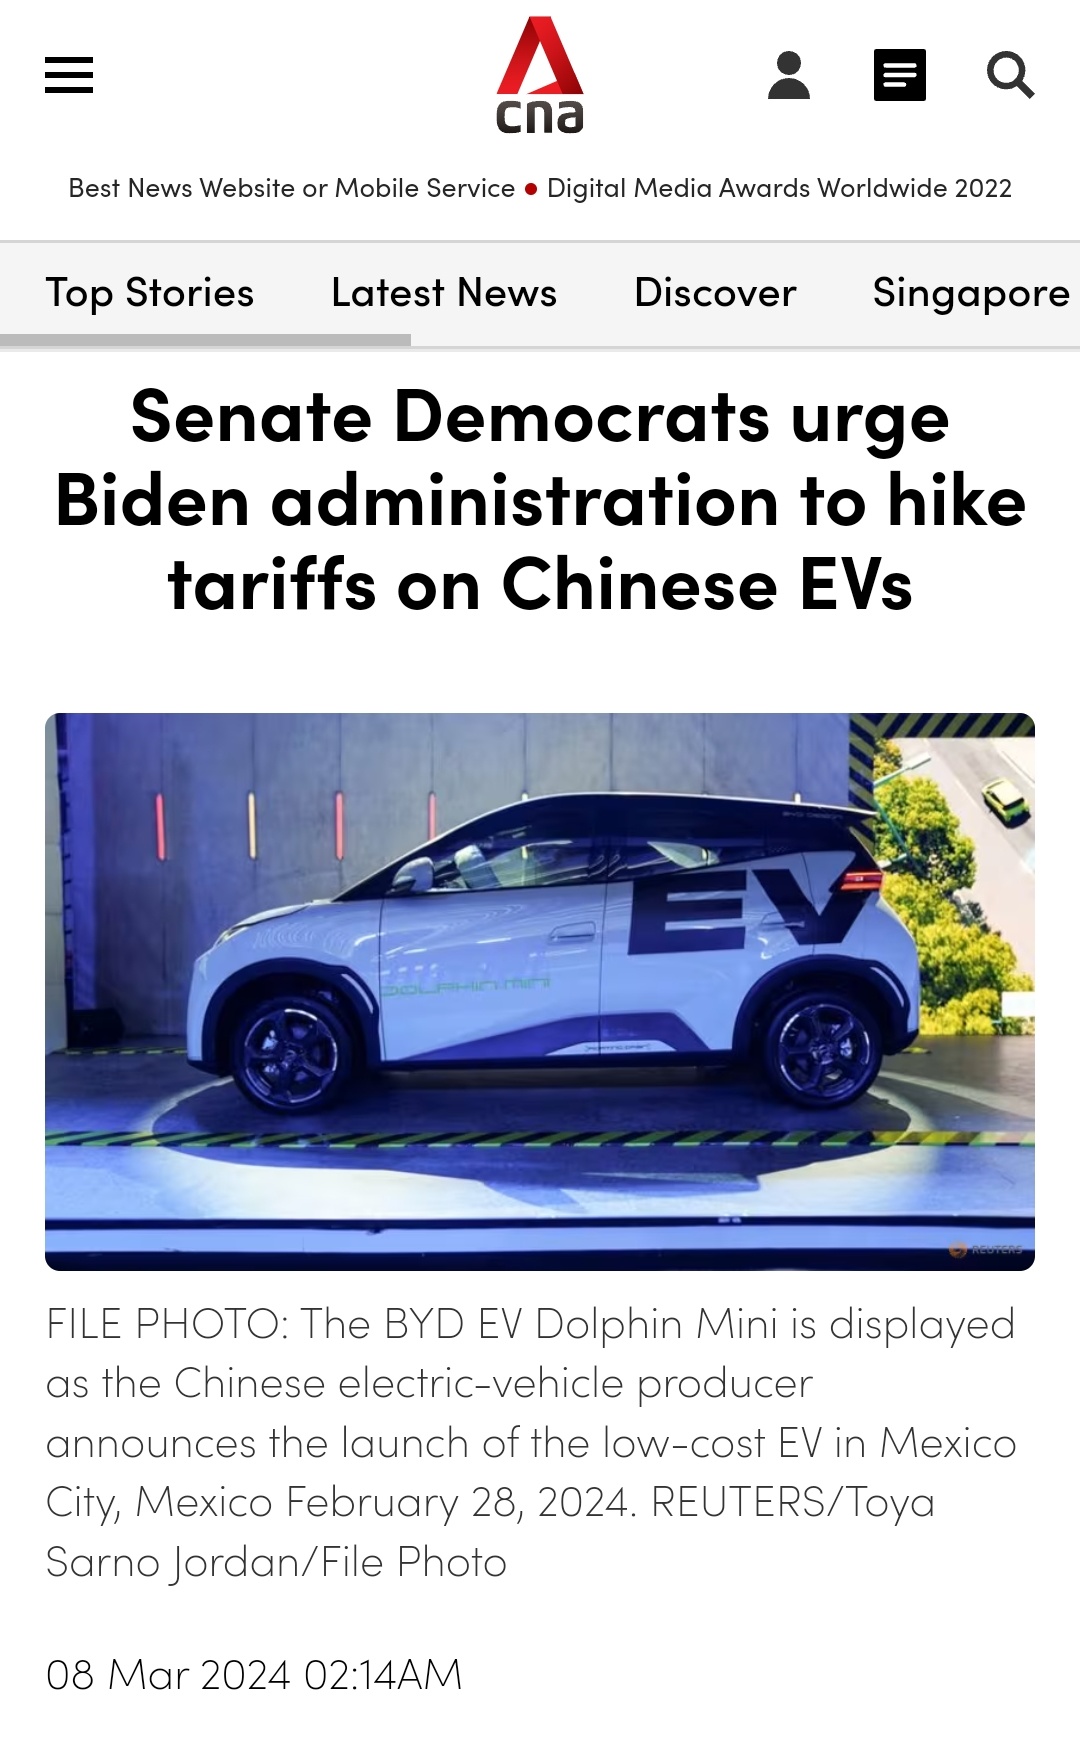 上院民主党員が中国製の電気自動車に対する関税引き上げをバイデン政権に求める